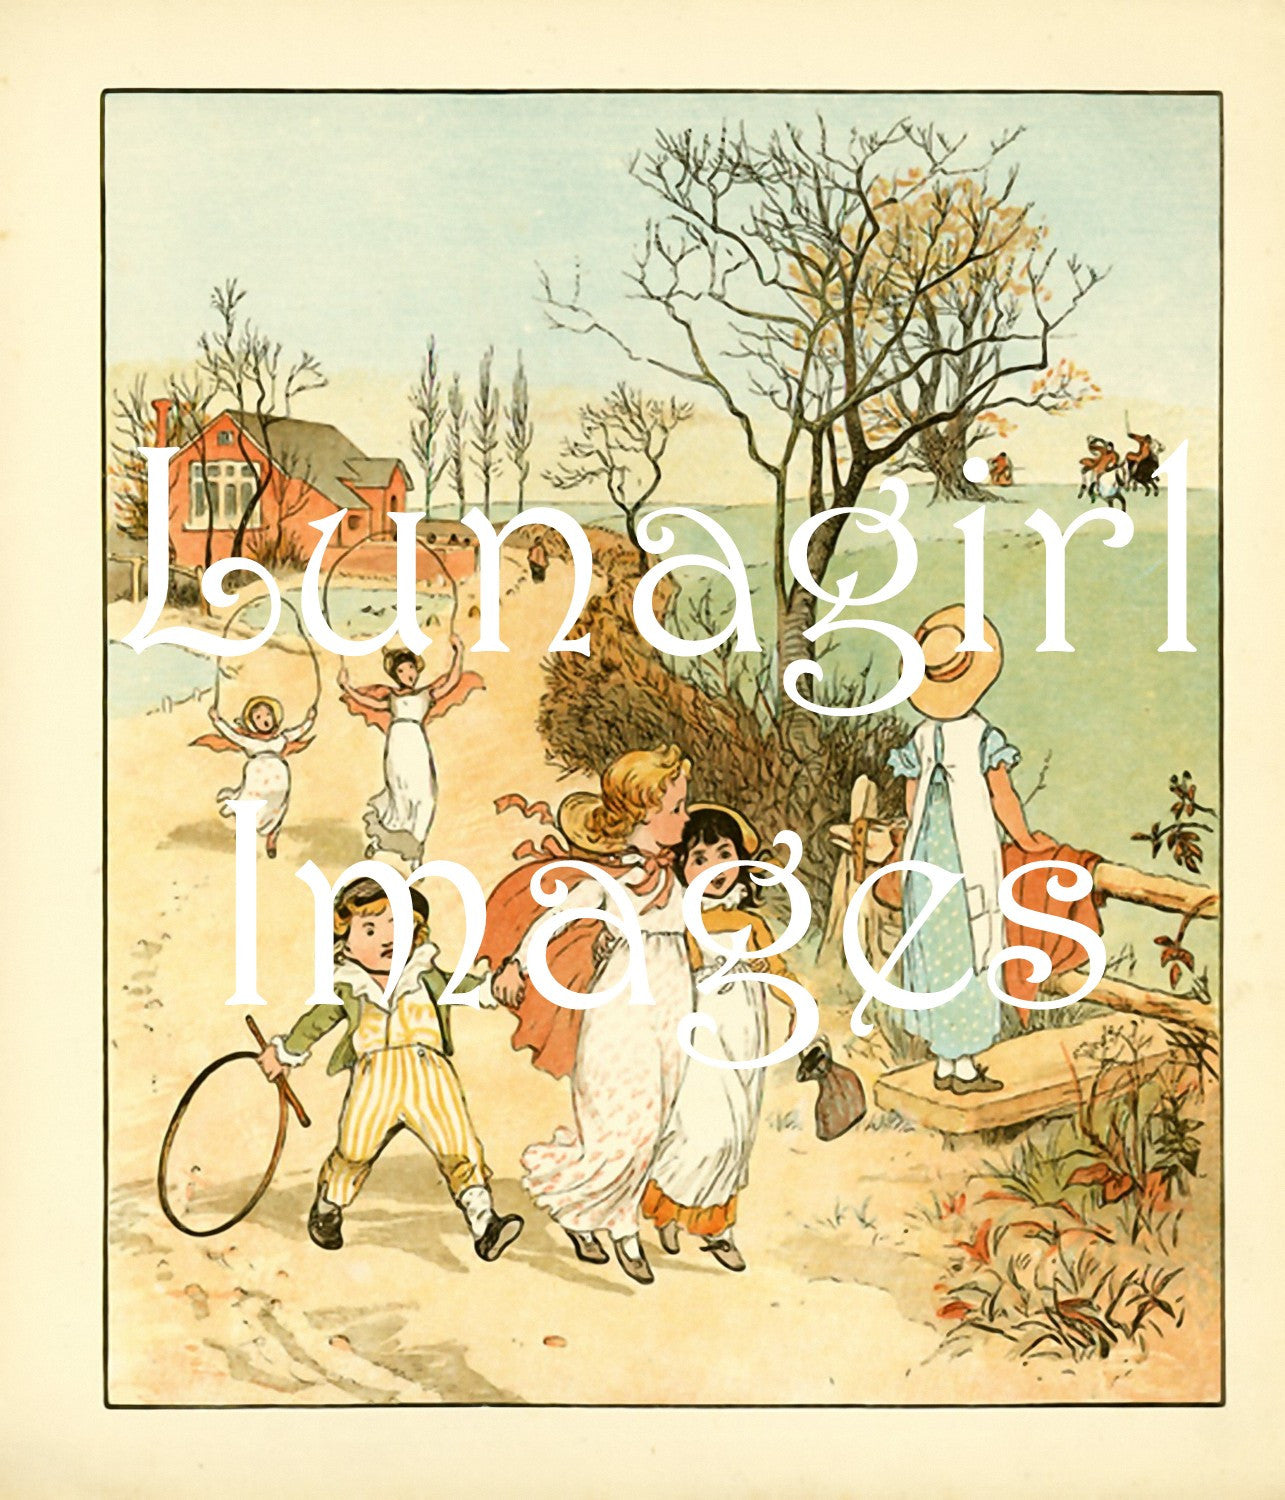 Caldecott Nursery Books: 100s of Images - Lunagirl